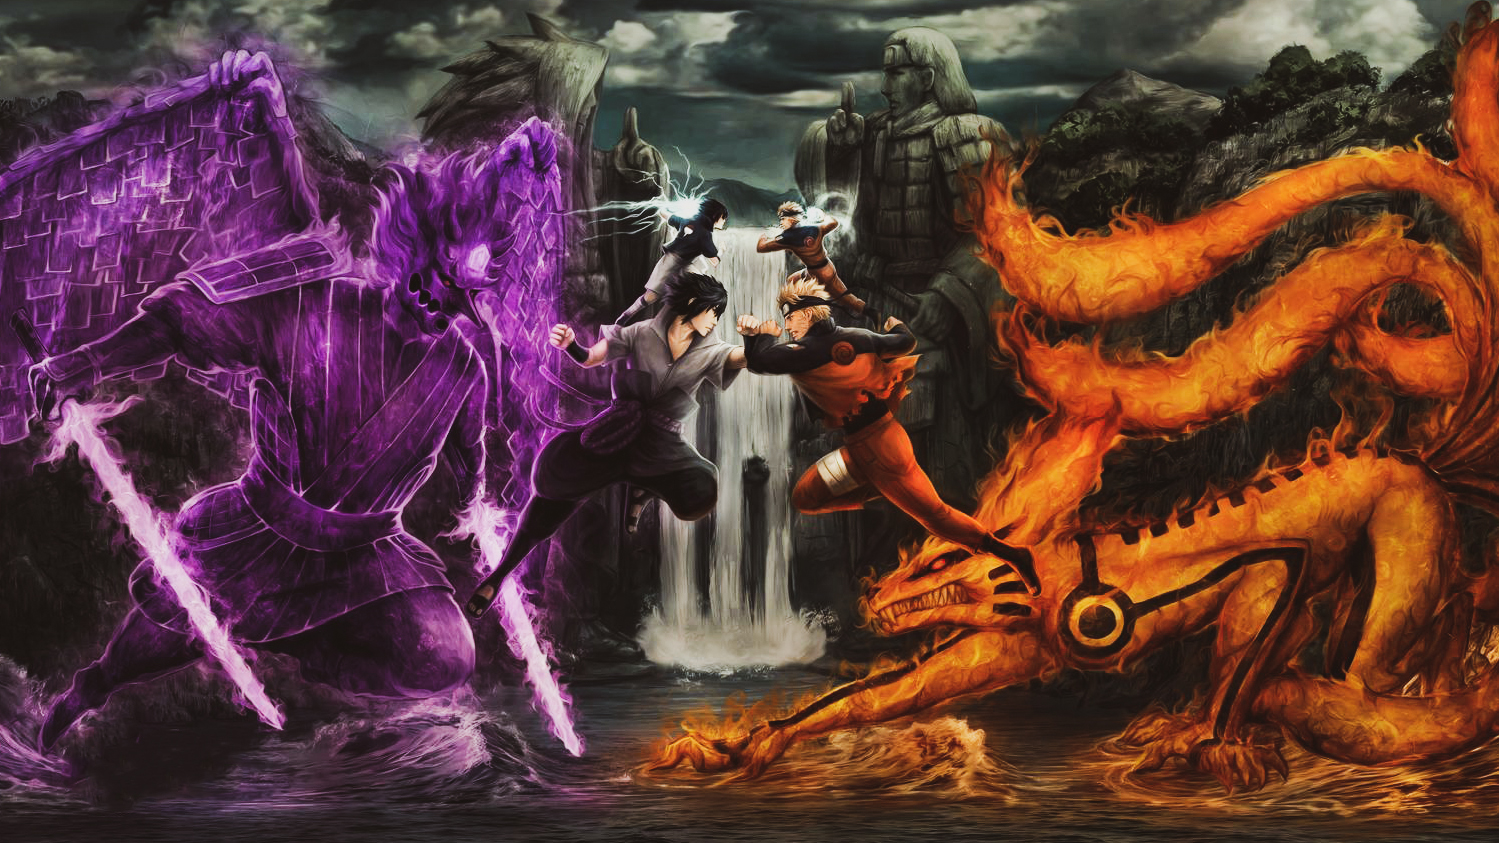 Cool Naruto Vs Sasuke Wallpapers